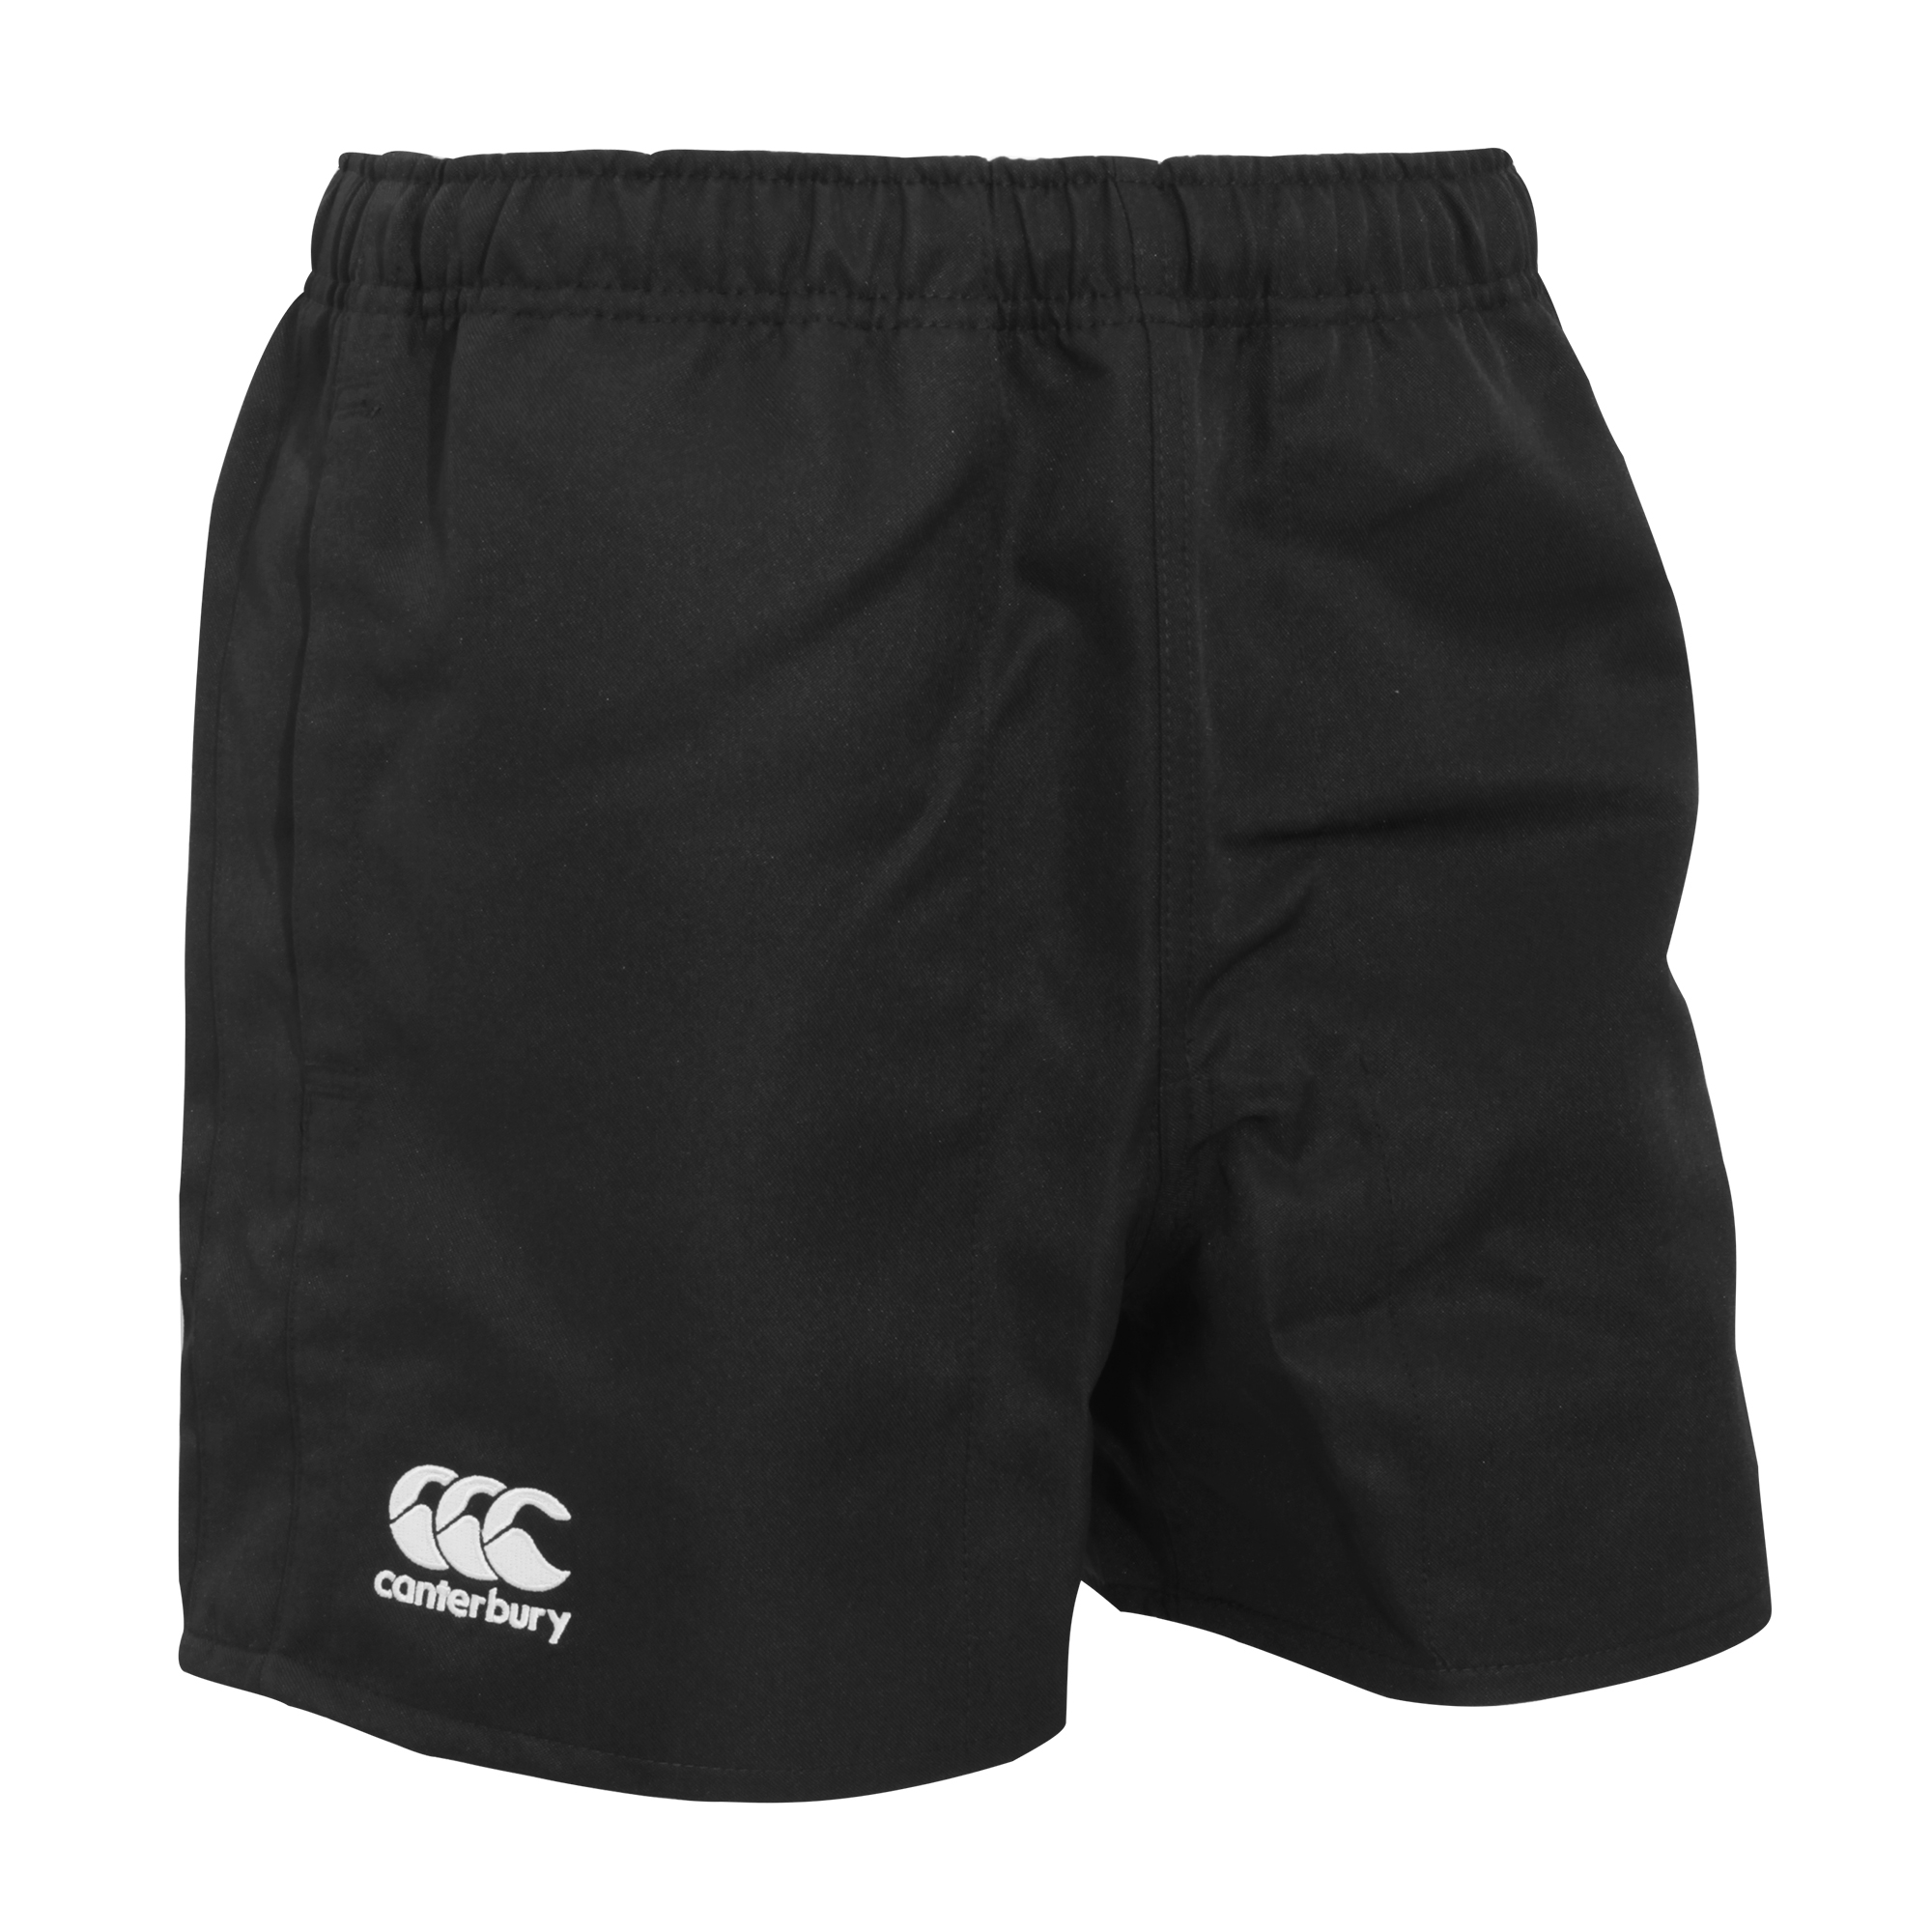 Pantalones Cortos De Deportes Elásticos Modelo Professional Canterbury  MKP